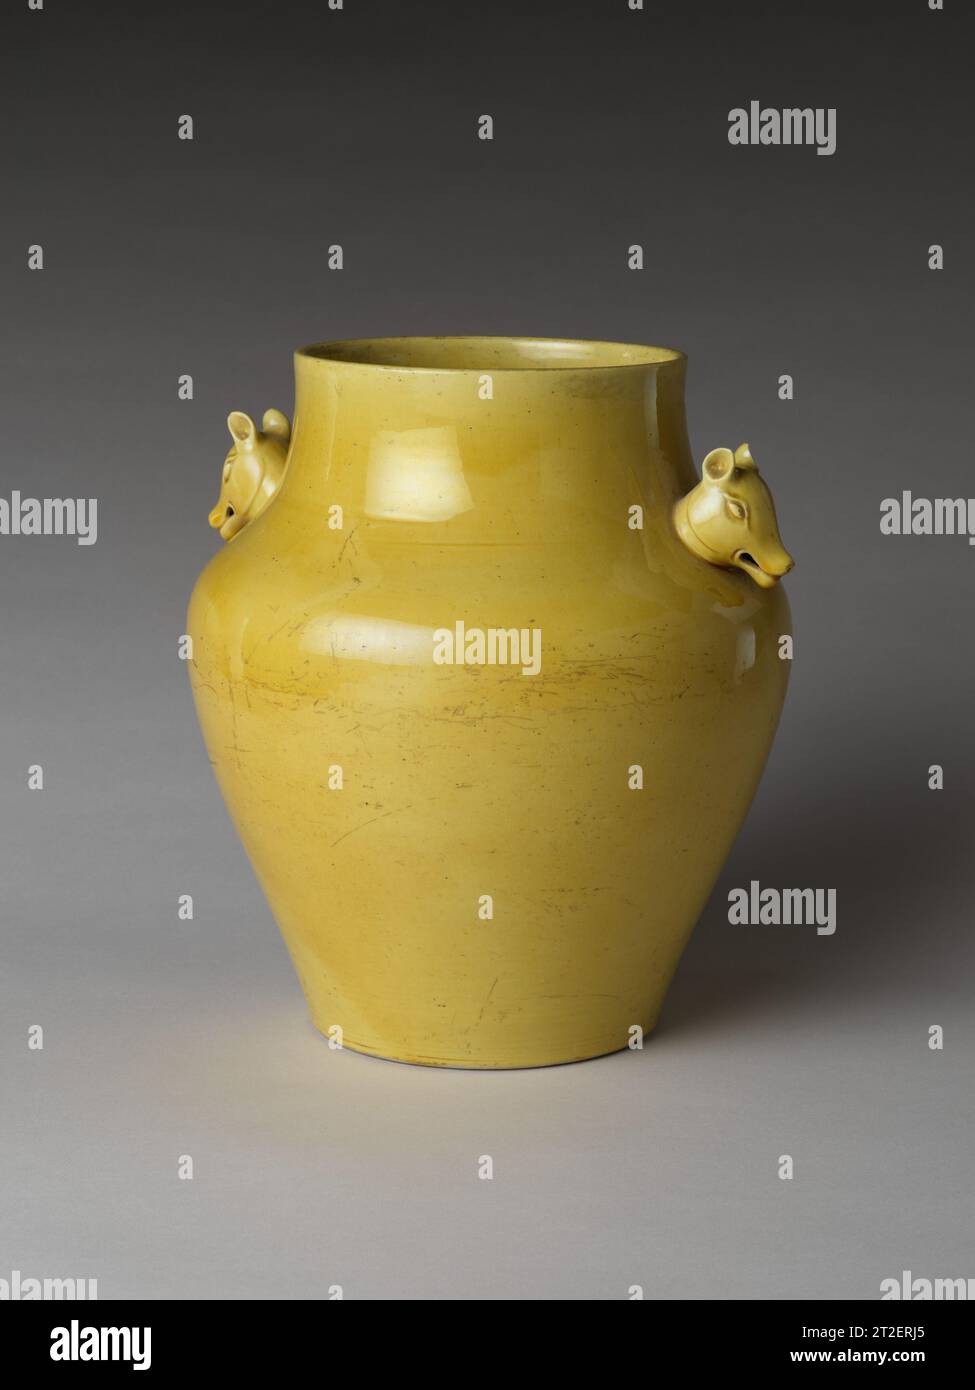 Récipient cérémoniel avec têtes d'animaux Chine 18e siècle ce pot est un exemple rare du genre de porcelaine impériale faite pour un usage cérémoniel du début de la dynastie Qing. Ce type de récipient est apparu pour la première fois de la fin du XVe au début du XVIe siècle, lorsque la cour impériale des Ming réglementait les récipients en porcelaine pour les cérémonies rituelles dans divers autels d'État. Un manuel rituel officiel identifie ce type de pot comme un récipient à vin (zhuozun). Bien que le nom du navire vienne des classiques anciens, la forme était nouvelle. La cour des Ming a décidé d'utiliser des articles en porcelaine à la place de la vess rituelle en bronze Banque D'Images